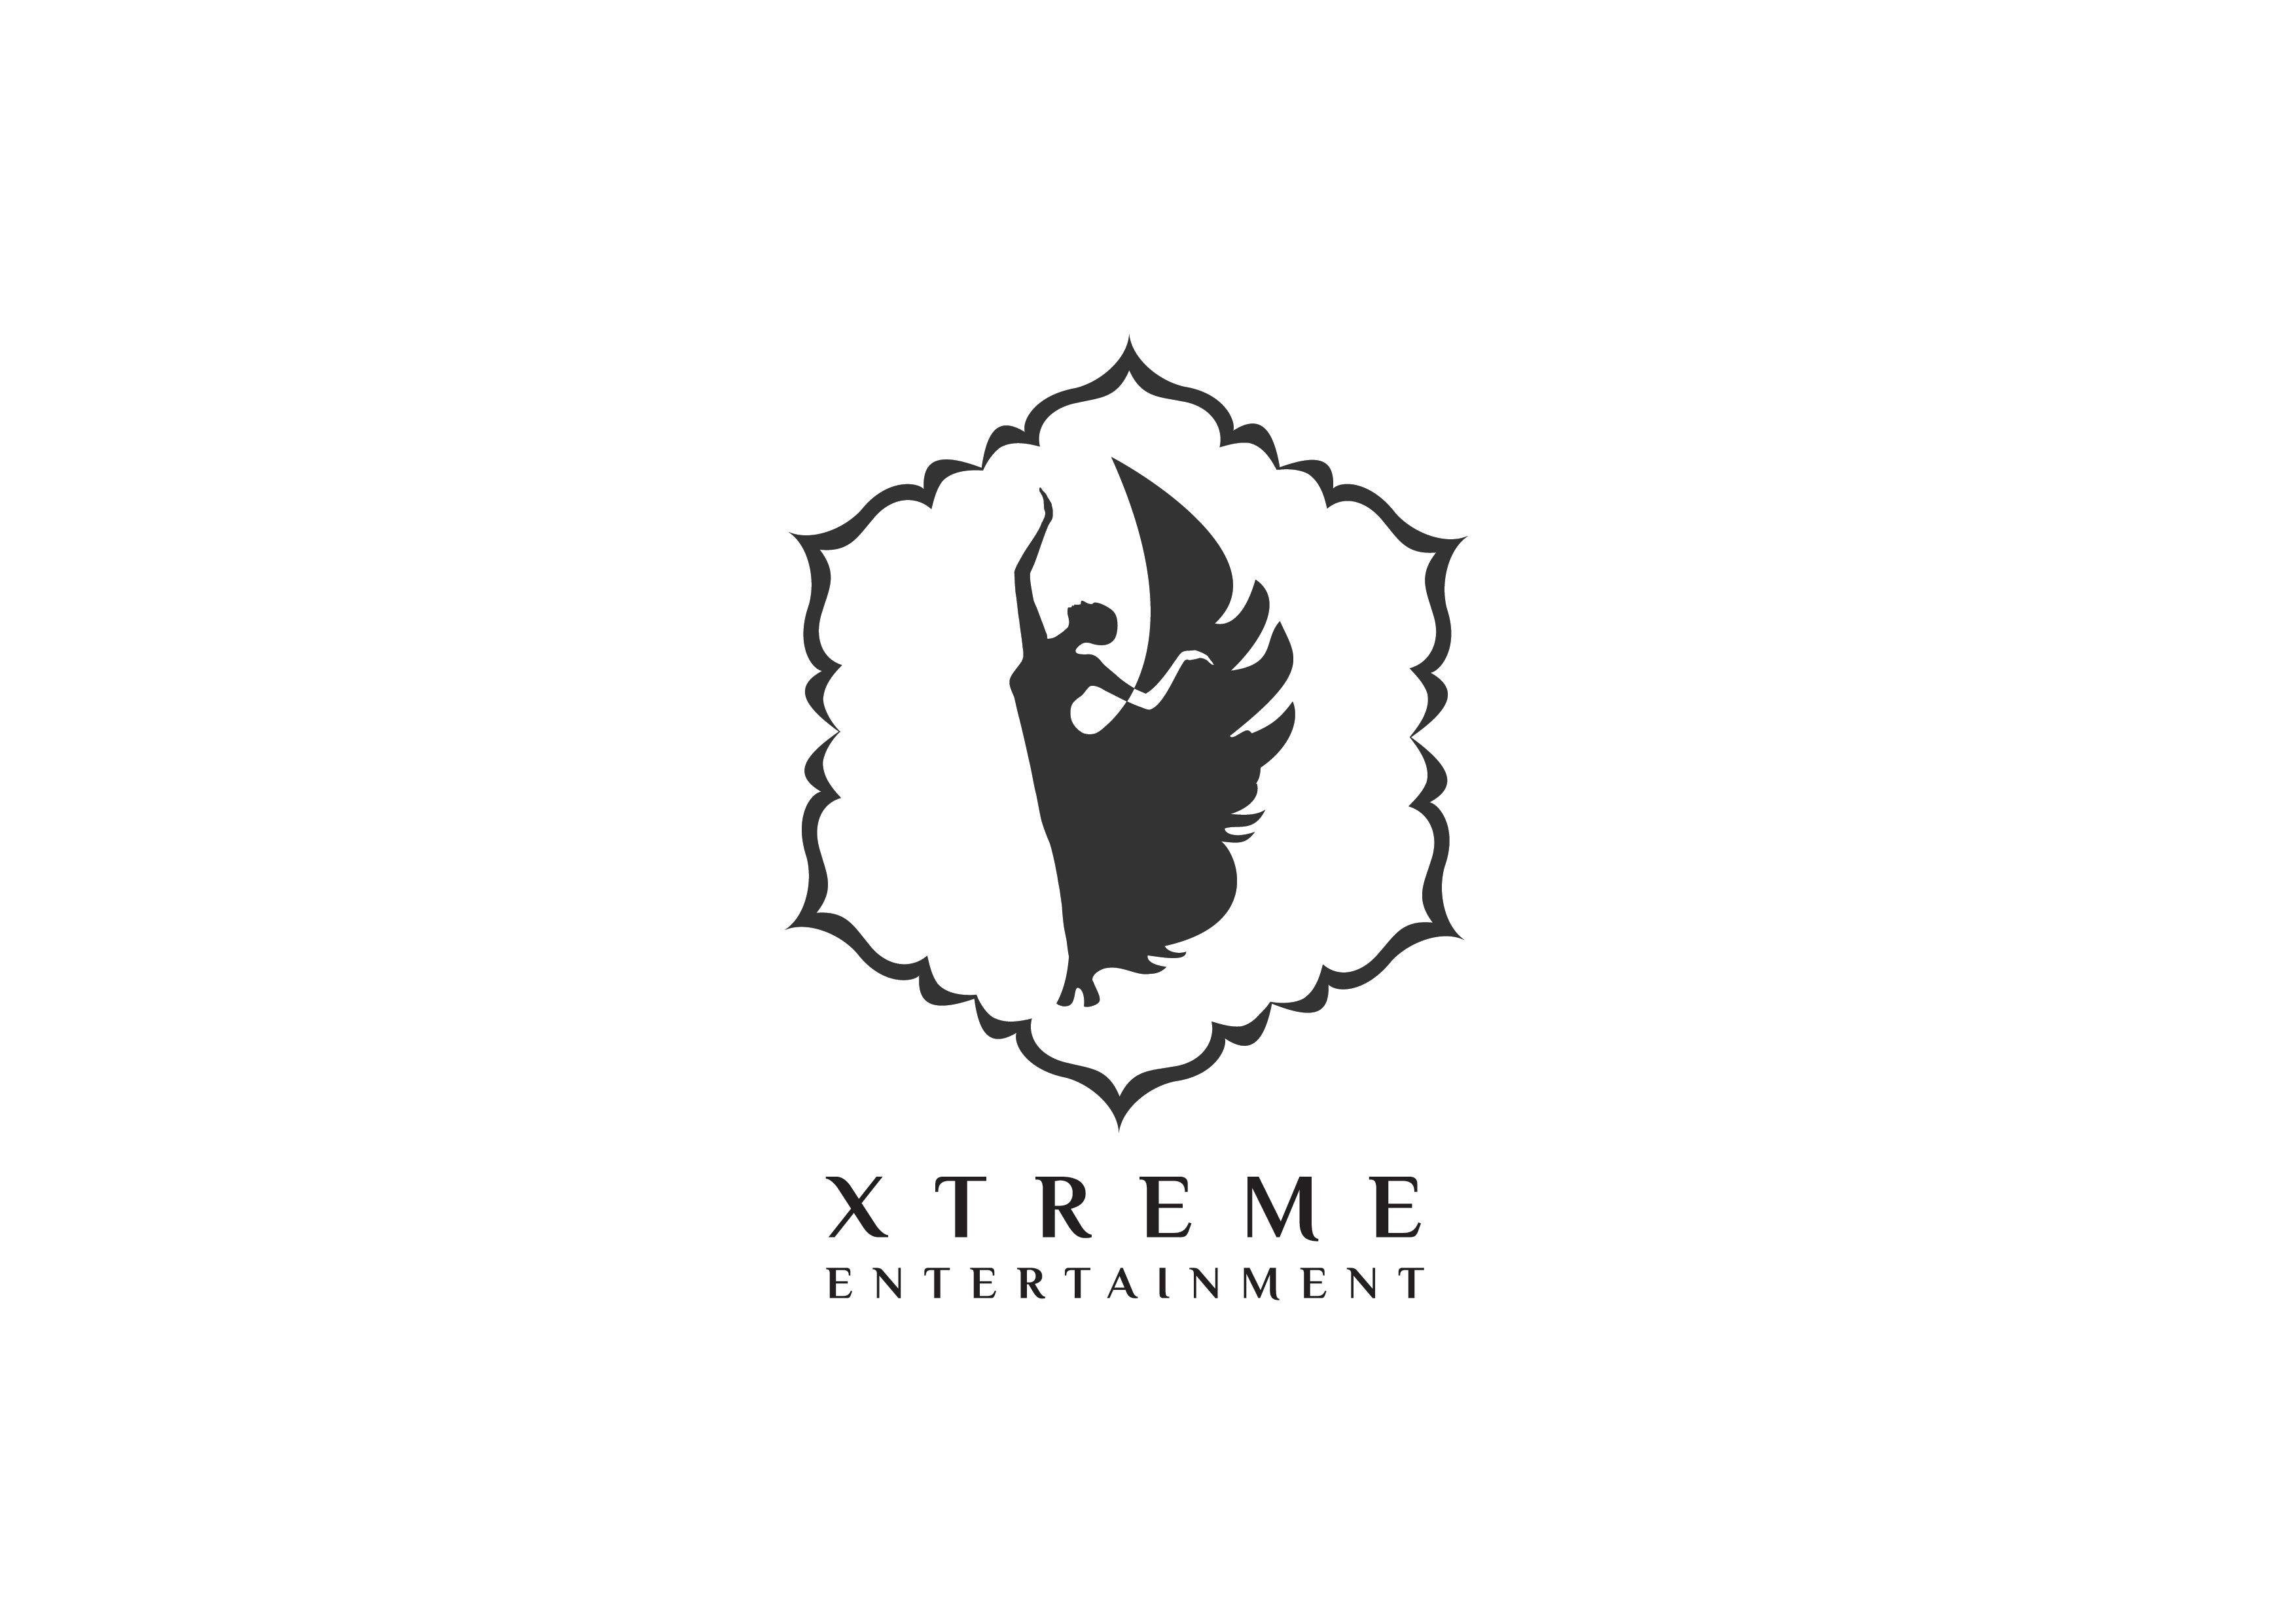 Xtreme Entertainment